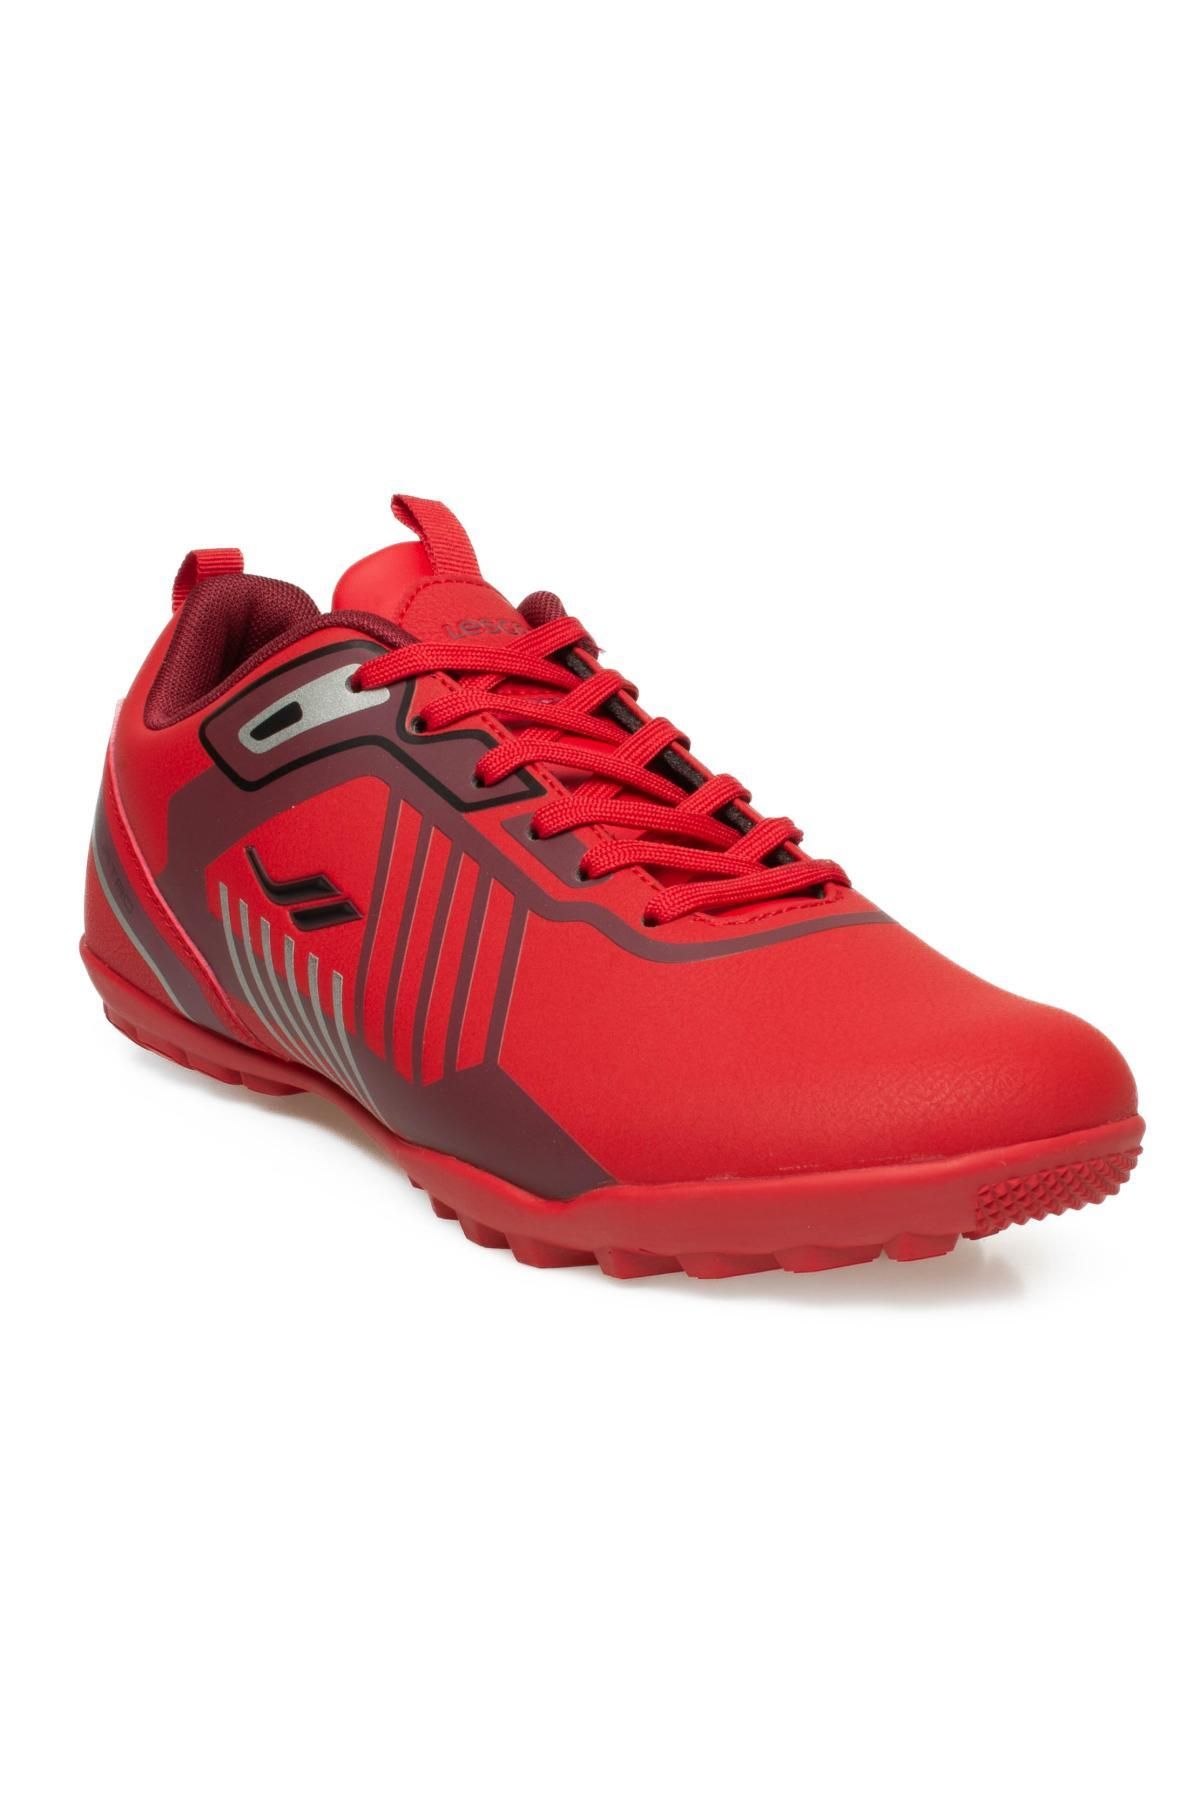 Lescon Quatro Halı Saha Kırmızı Erkek Spor Ayakkabı